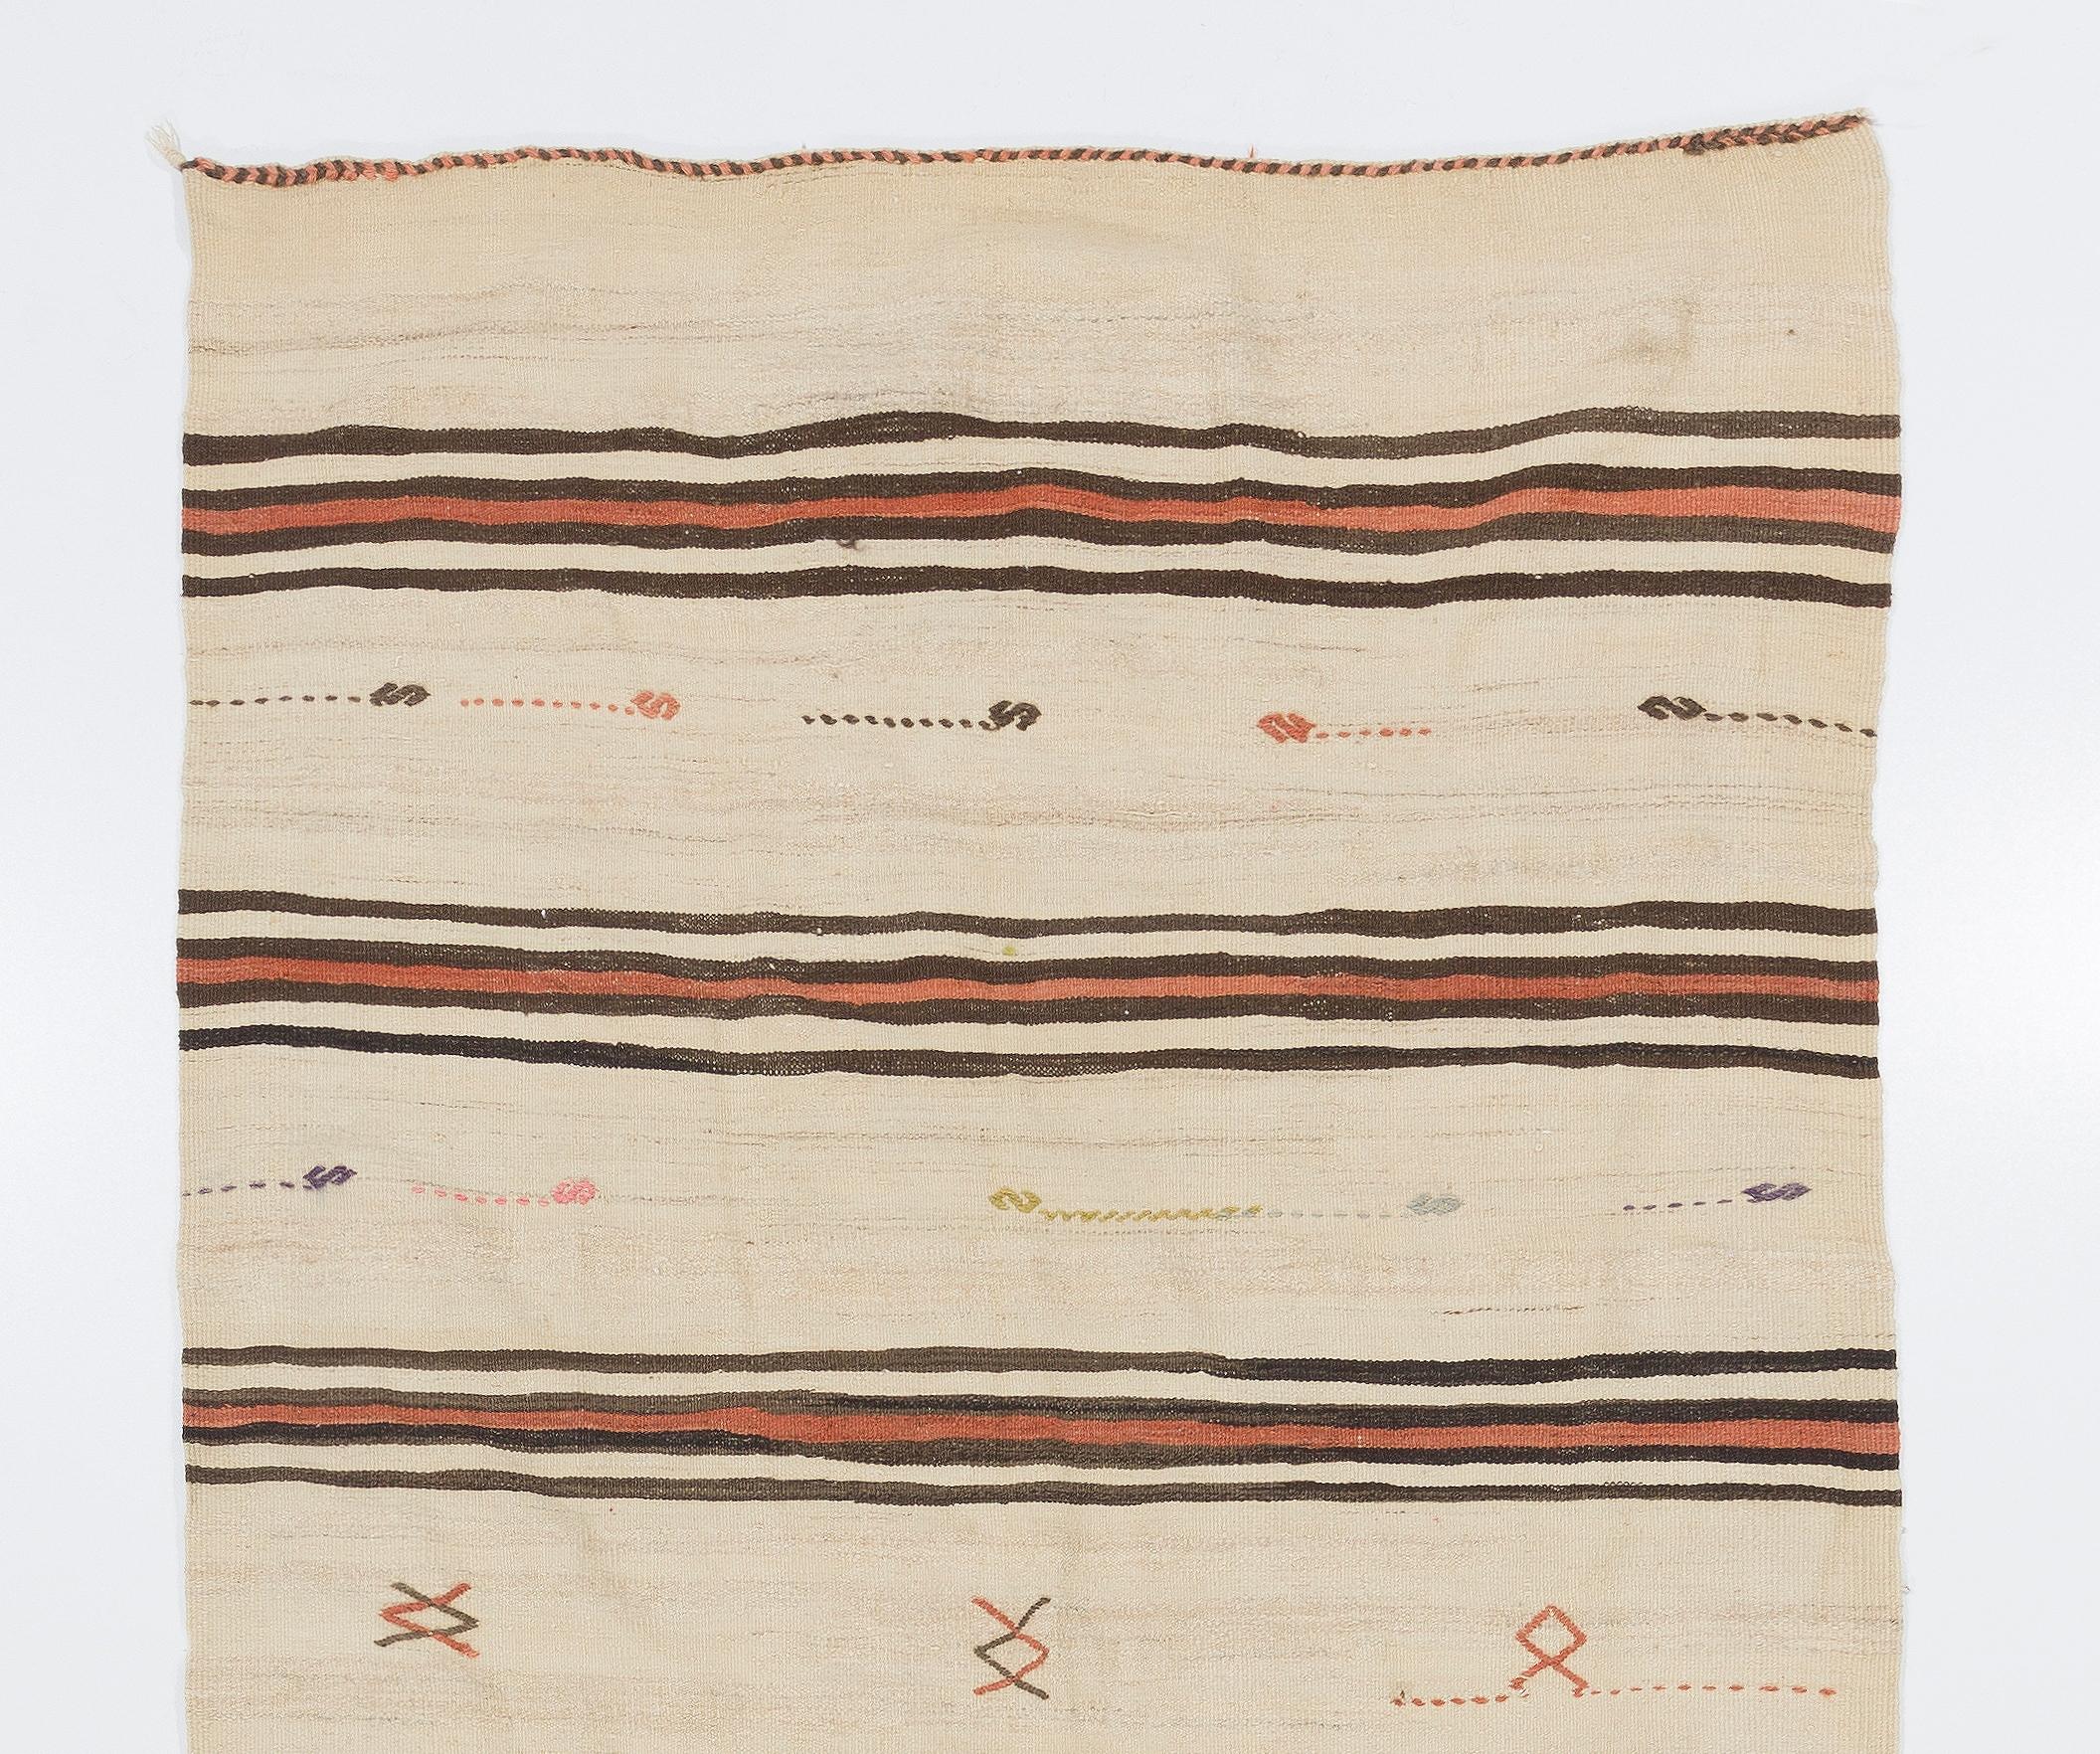 Ce tapis en laine à tissage plat, simple mais magnifique, tissé à la main par les tribus nomades du centre-sud de la Turquie, présente des rayures de couleur beige, marron et rouge garance et de minuscules motifs géométriques simples, tels que des